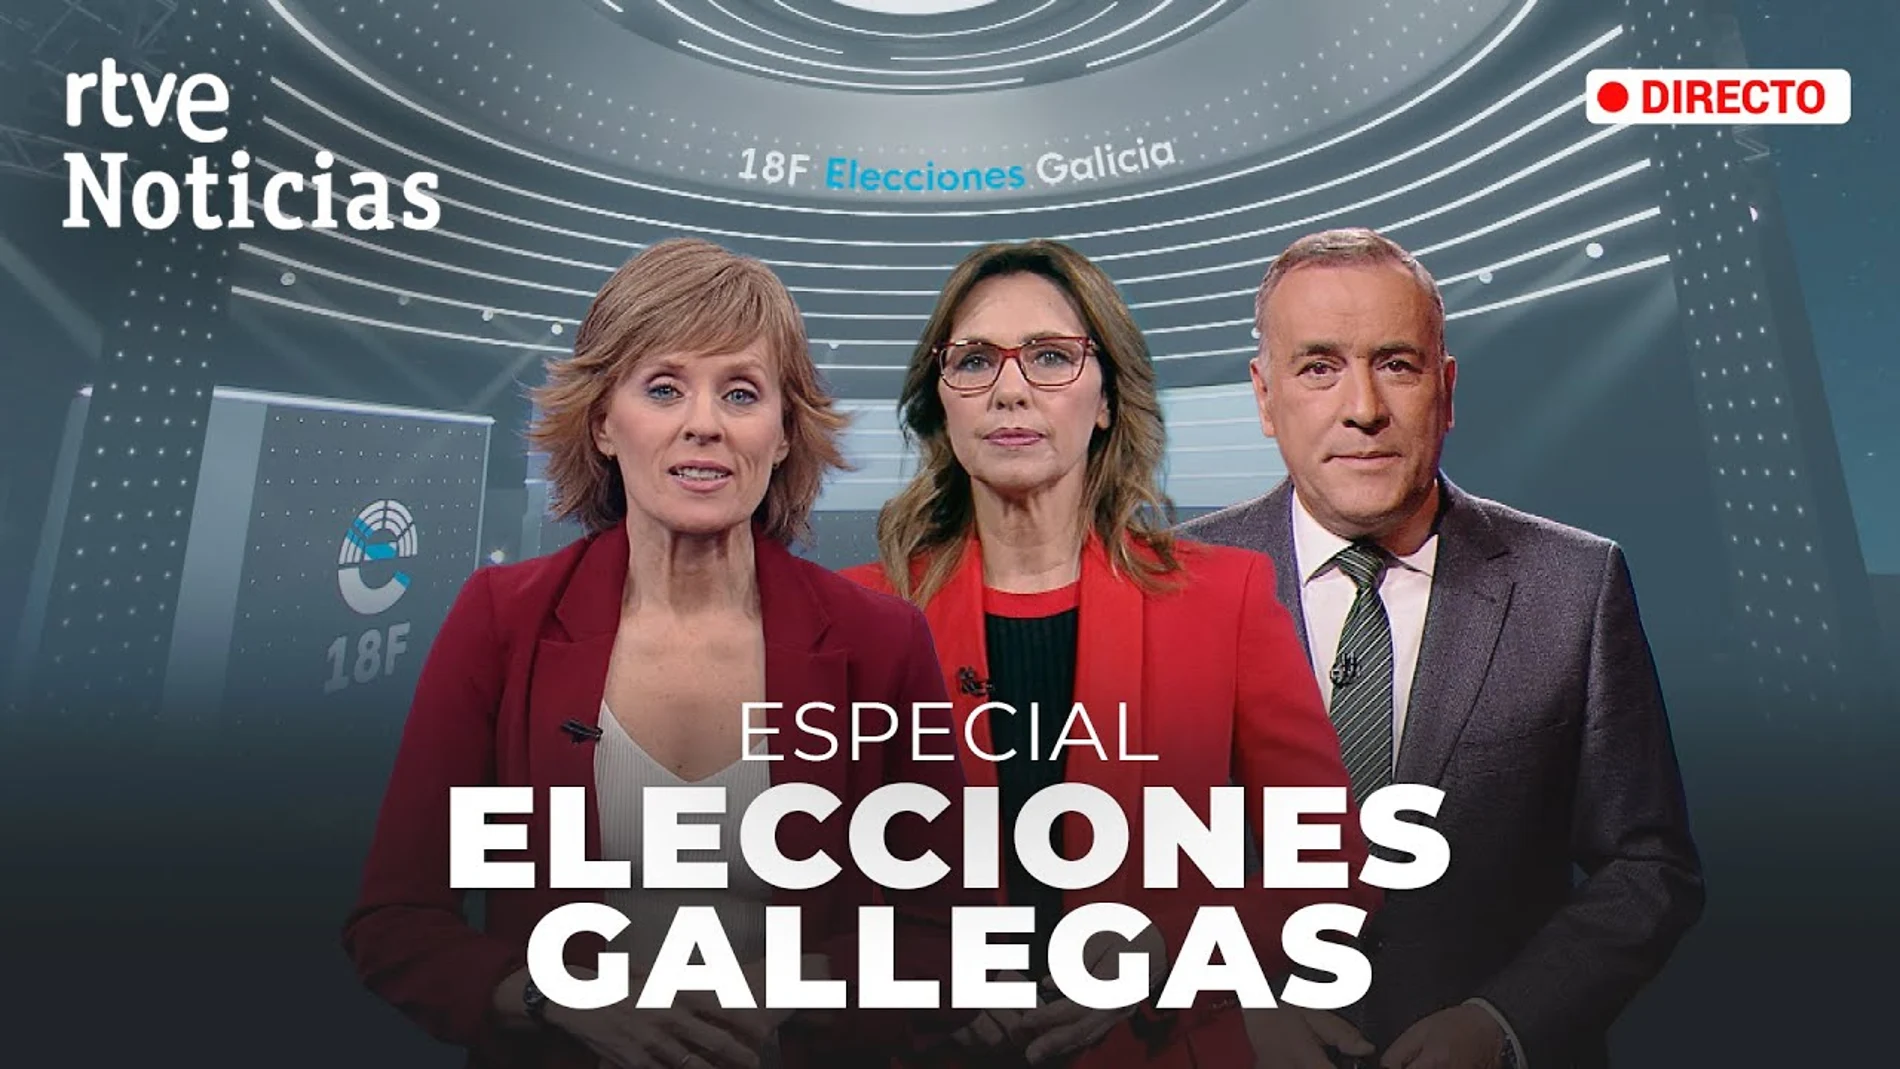 La1 de Televisión Española y la "errática campaña" del PP que consiguió "salvar los muebles"